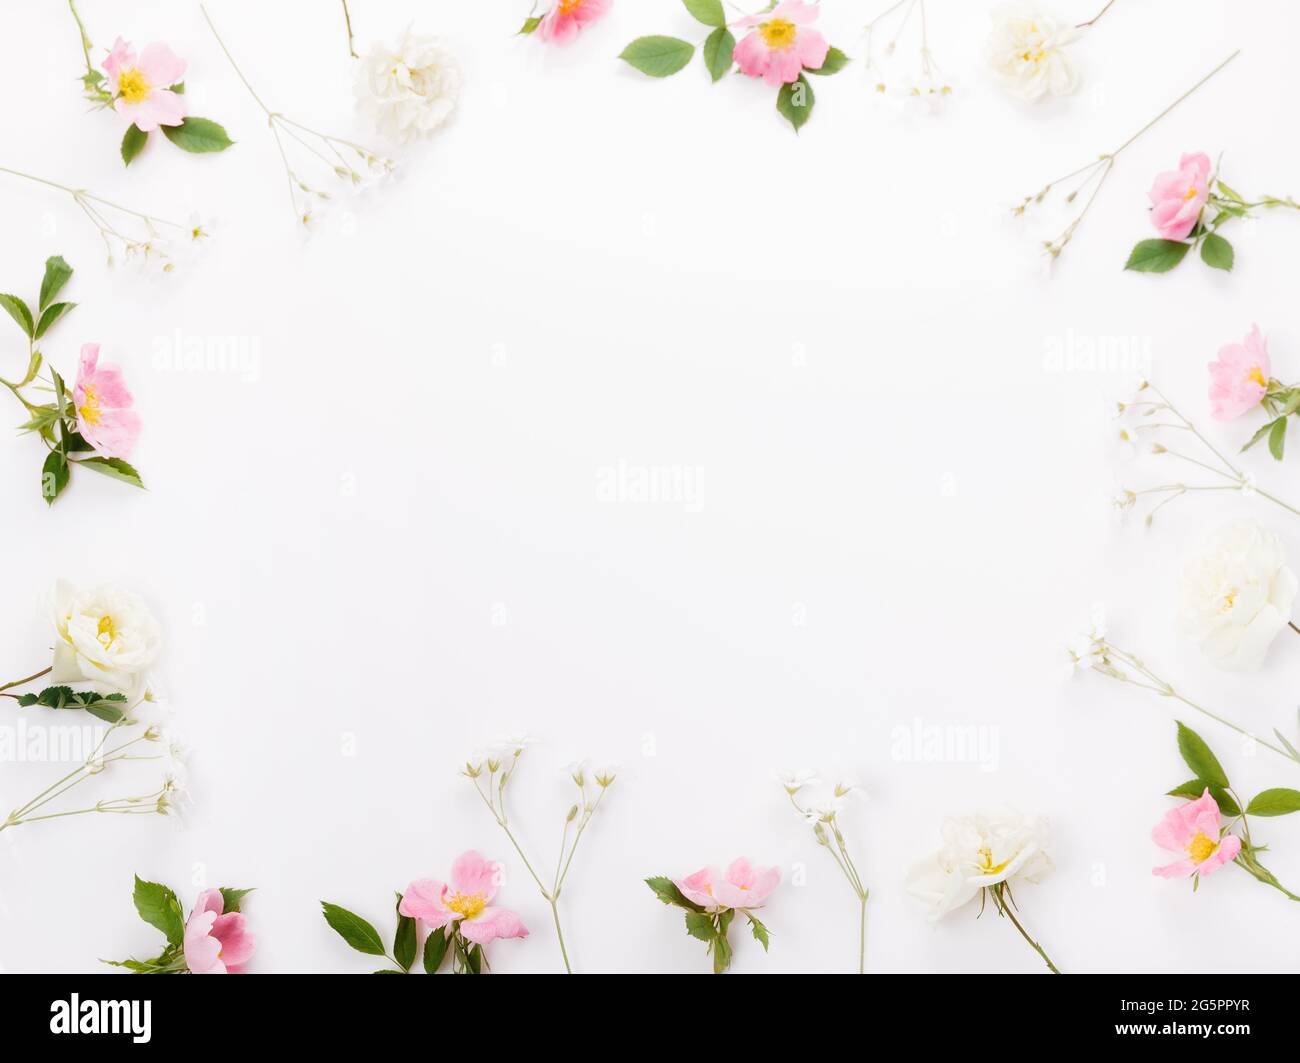 Composition de fleurs sauvages festives sur fond blanc. Vue de dessus du plafond, pose à plat. Copier l'espace. Banque D'Images